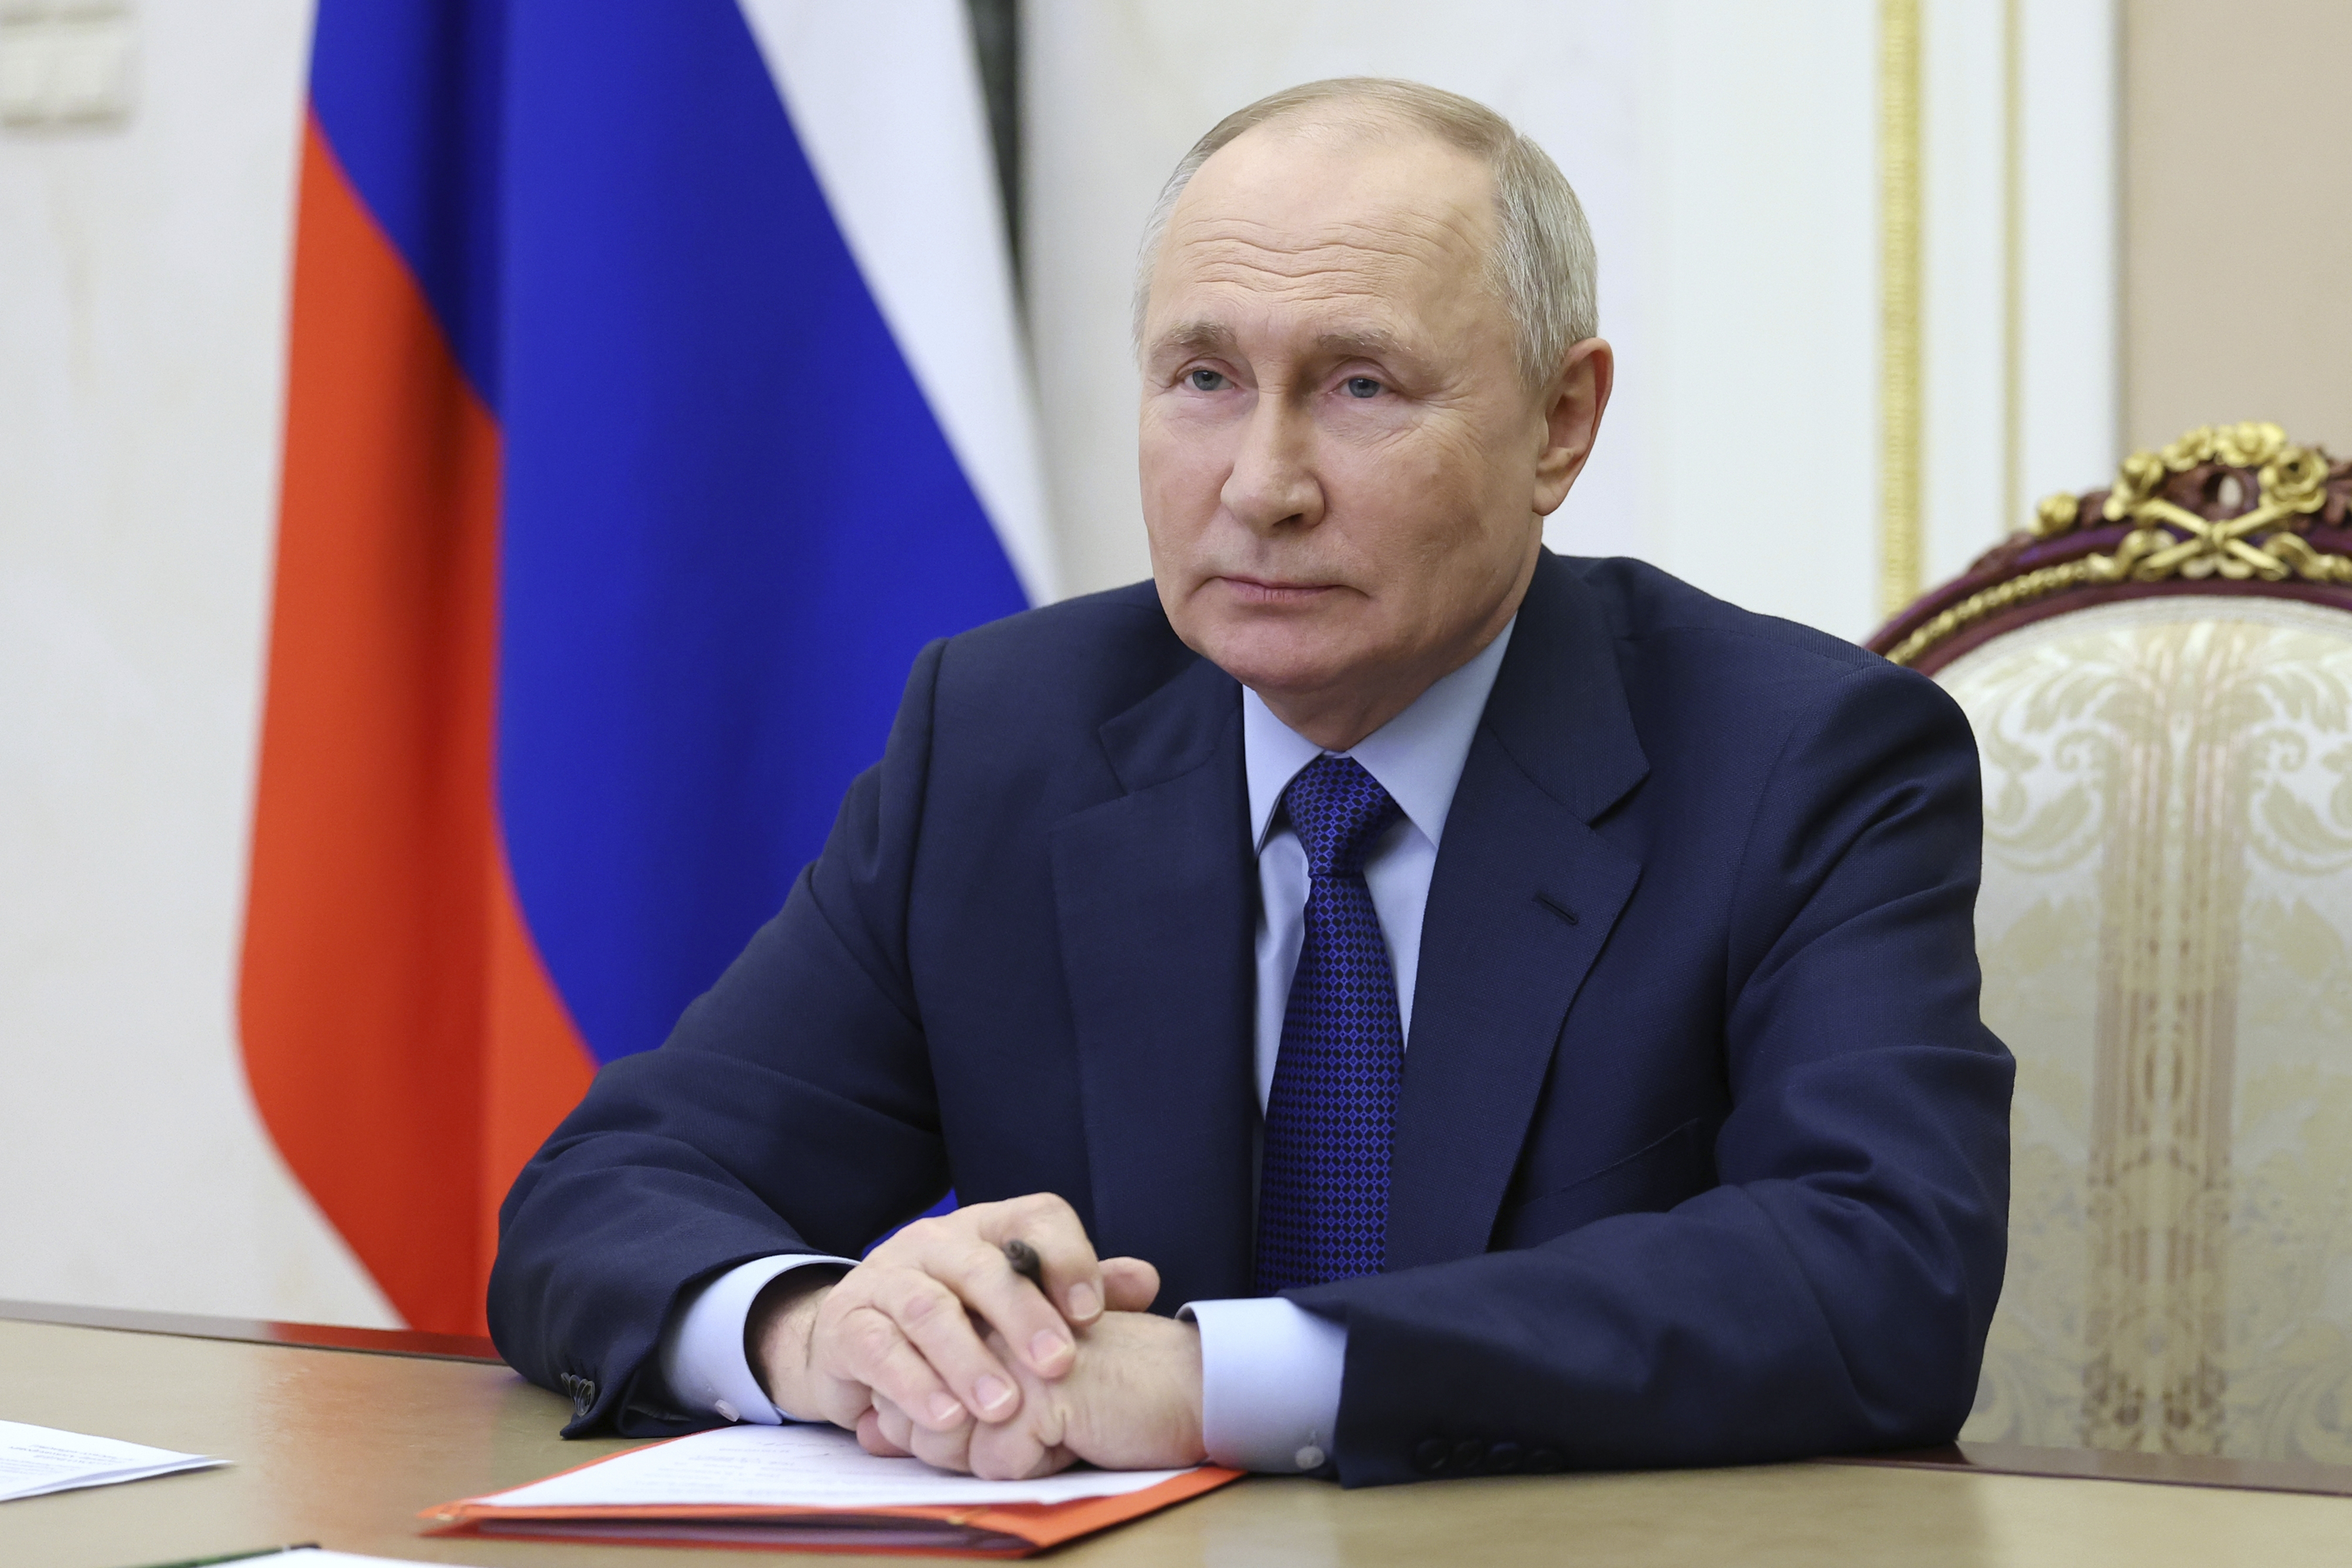 Die Entscheidung wurde getroffen, da die Befürchtungen über eine Invasion Wladimir Putins in andere europäische Länder weiter zunehmen